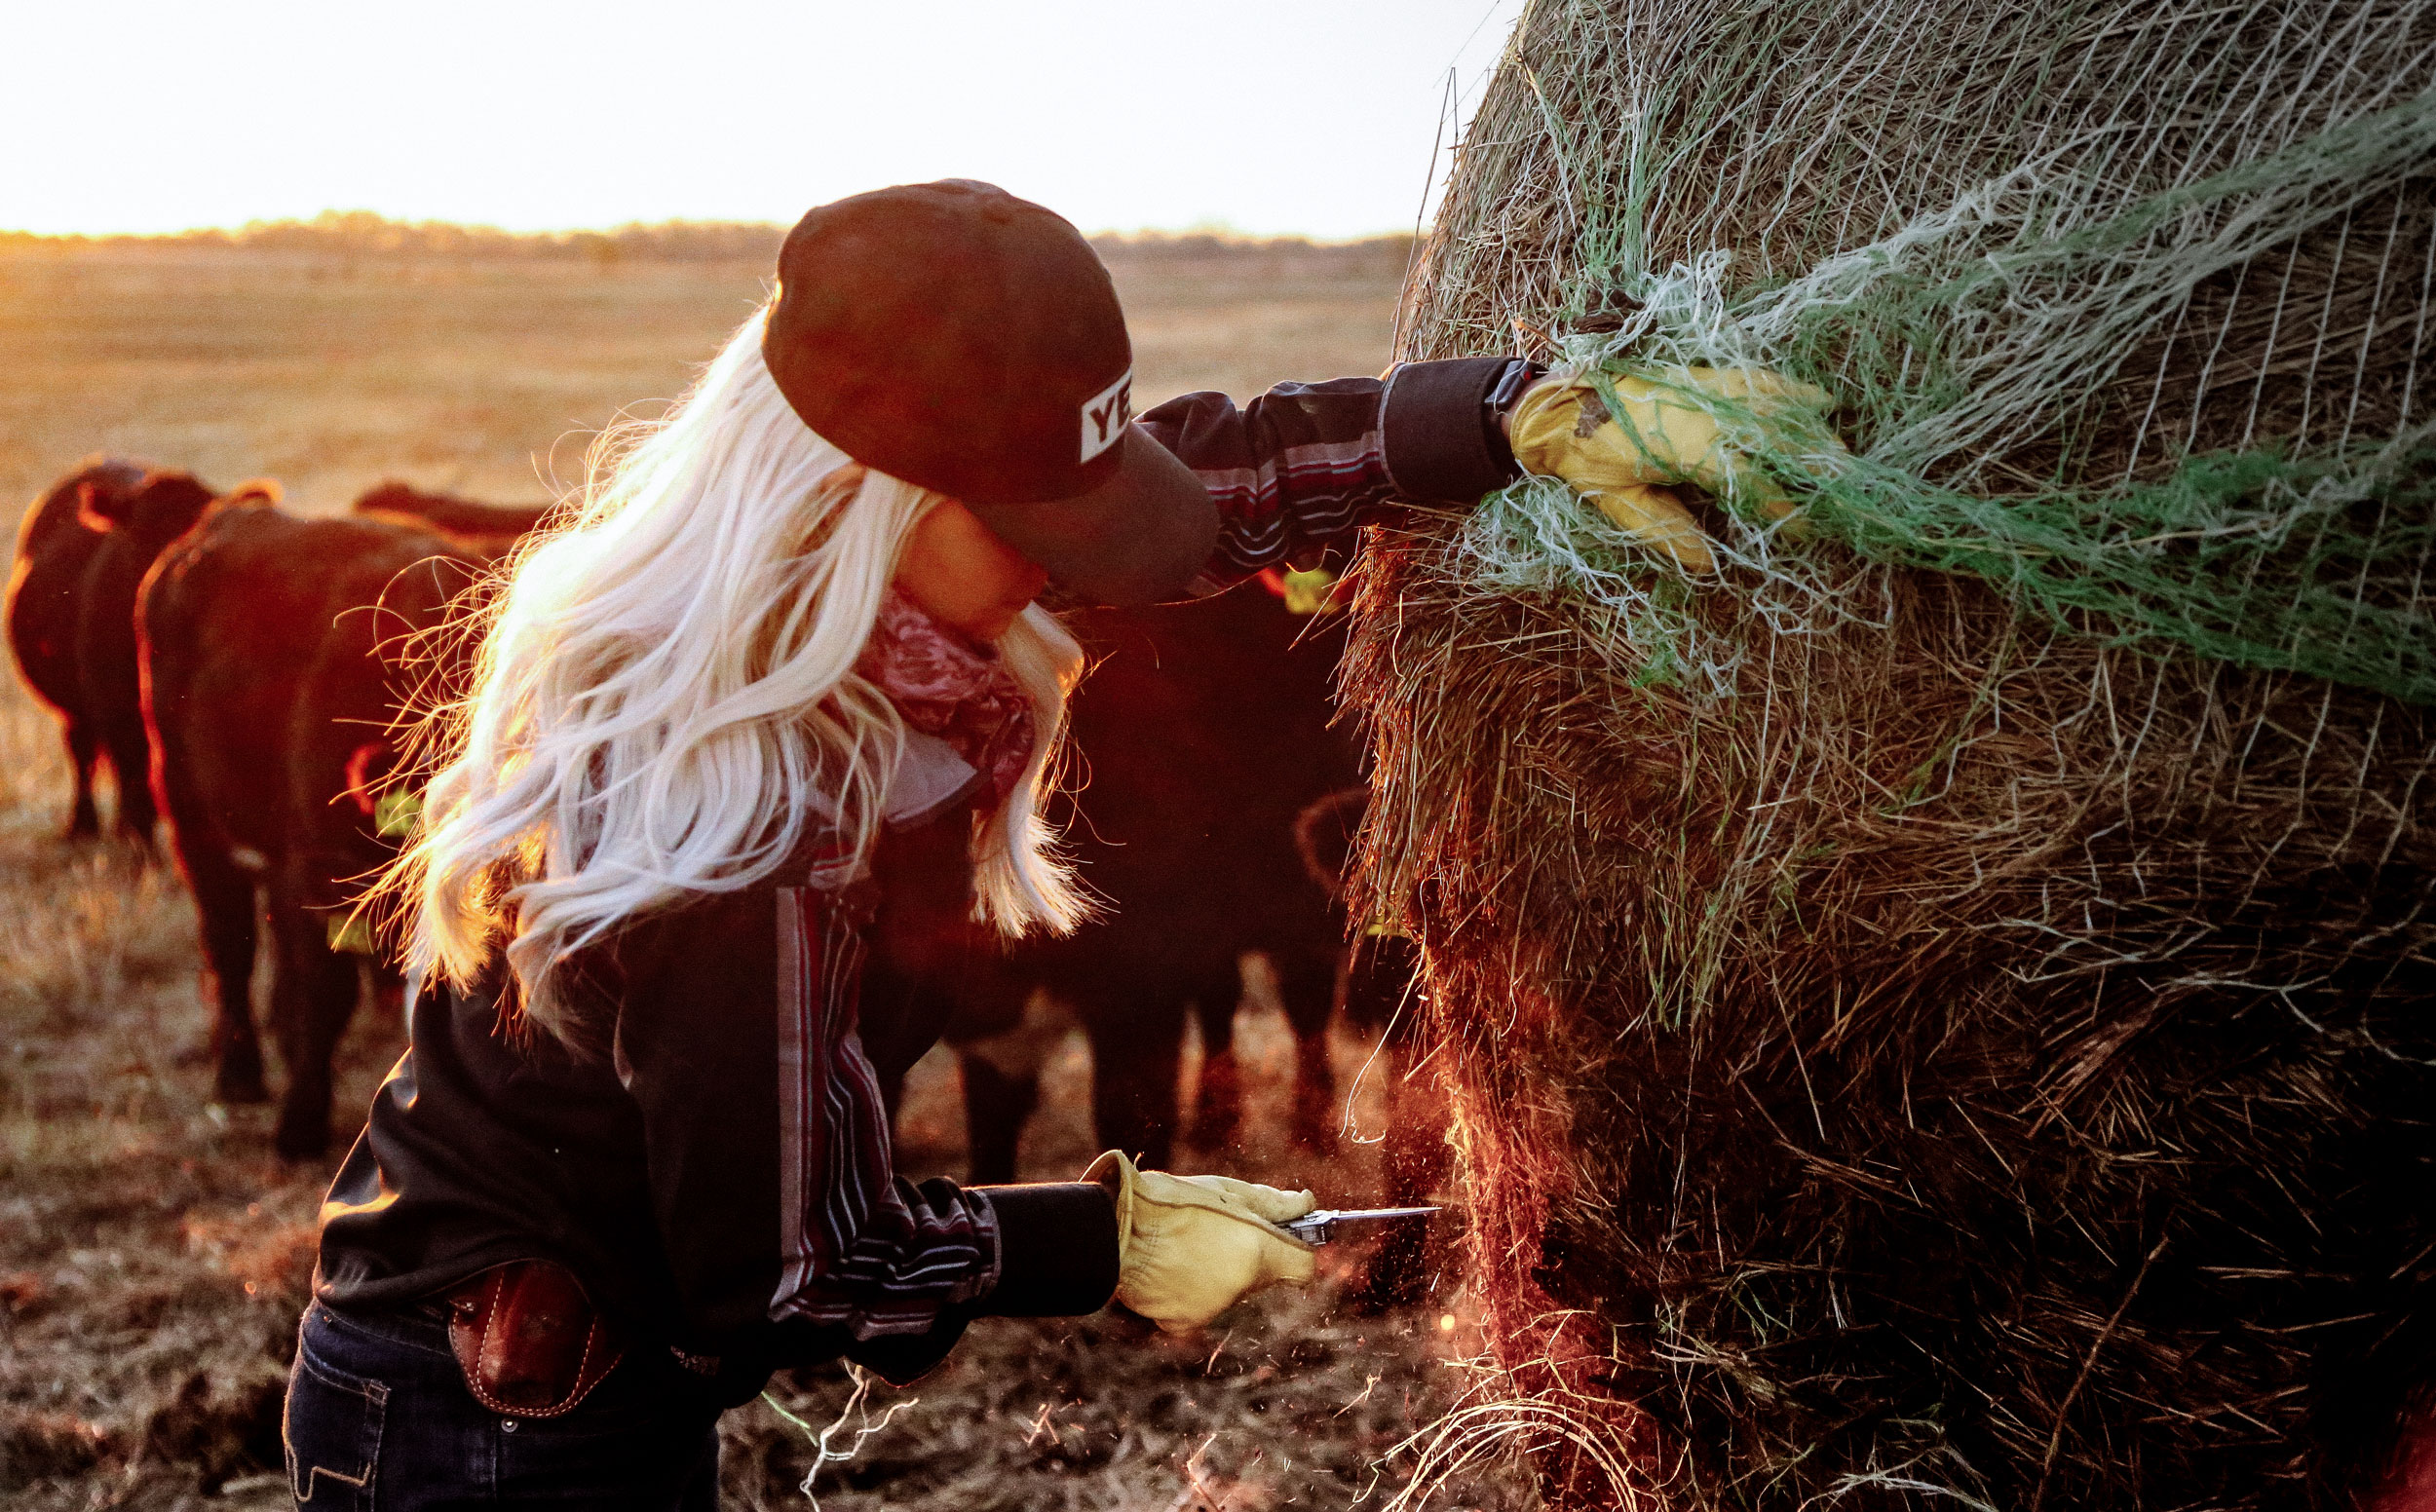 A woman working in a farm field